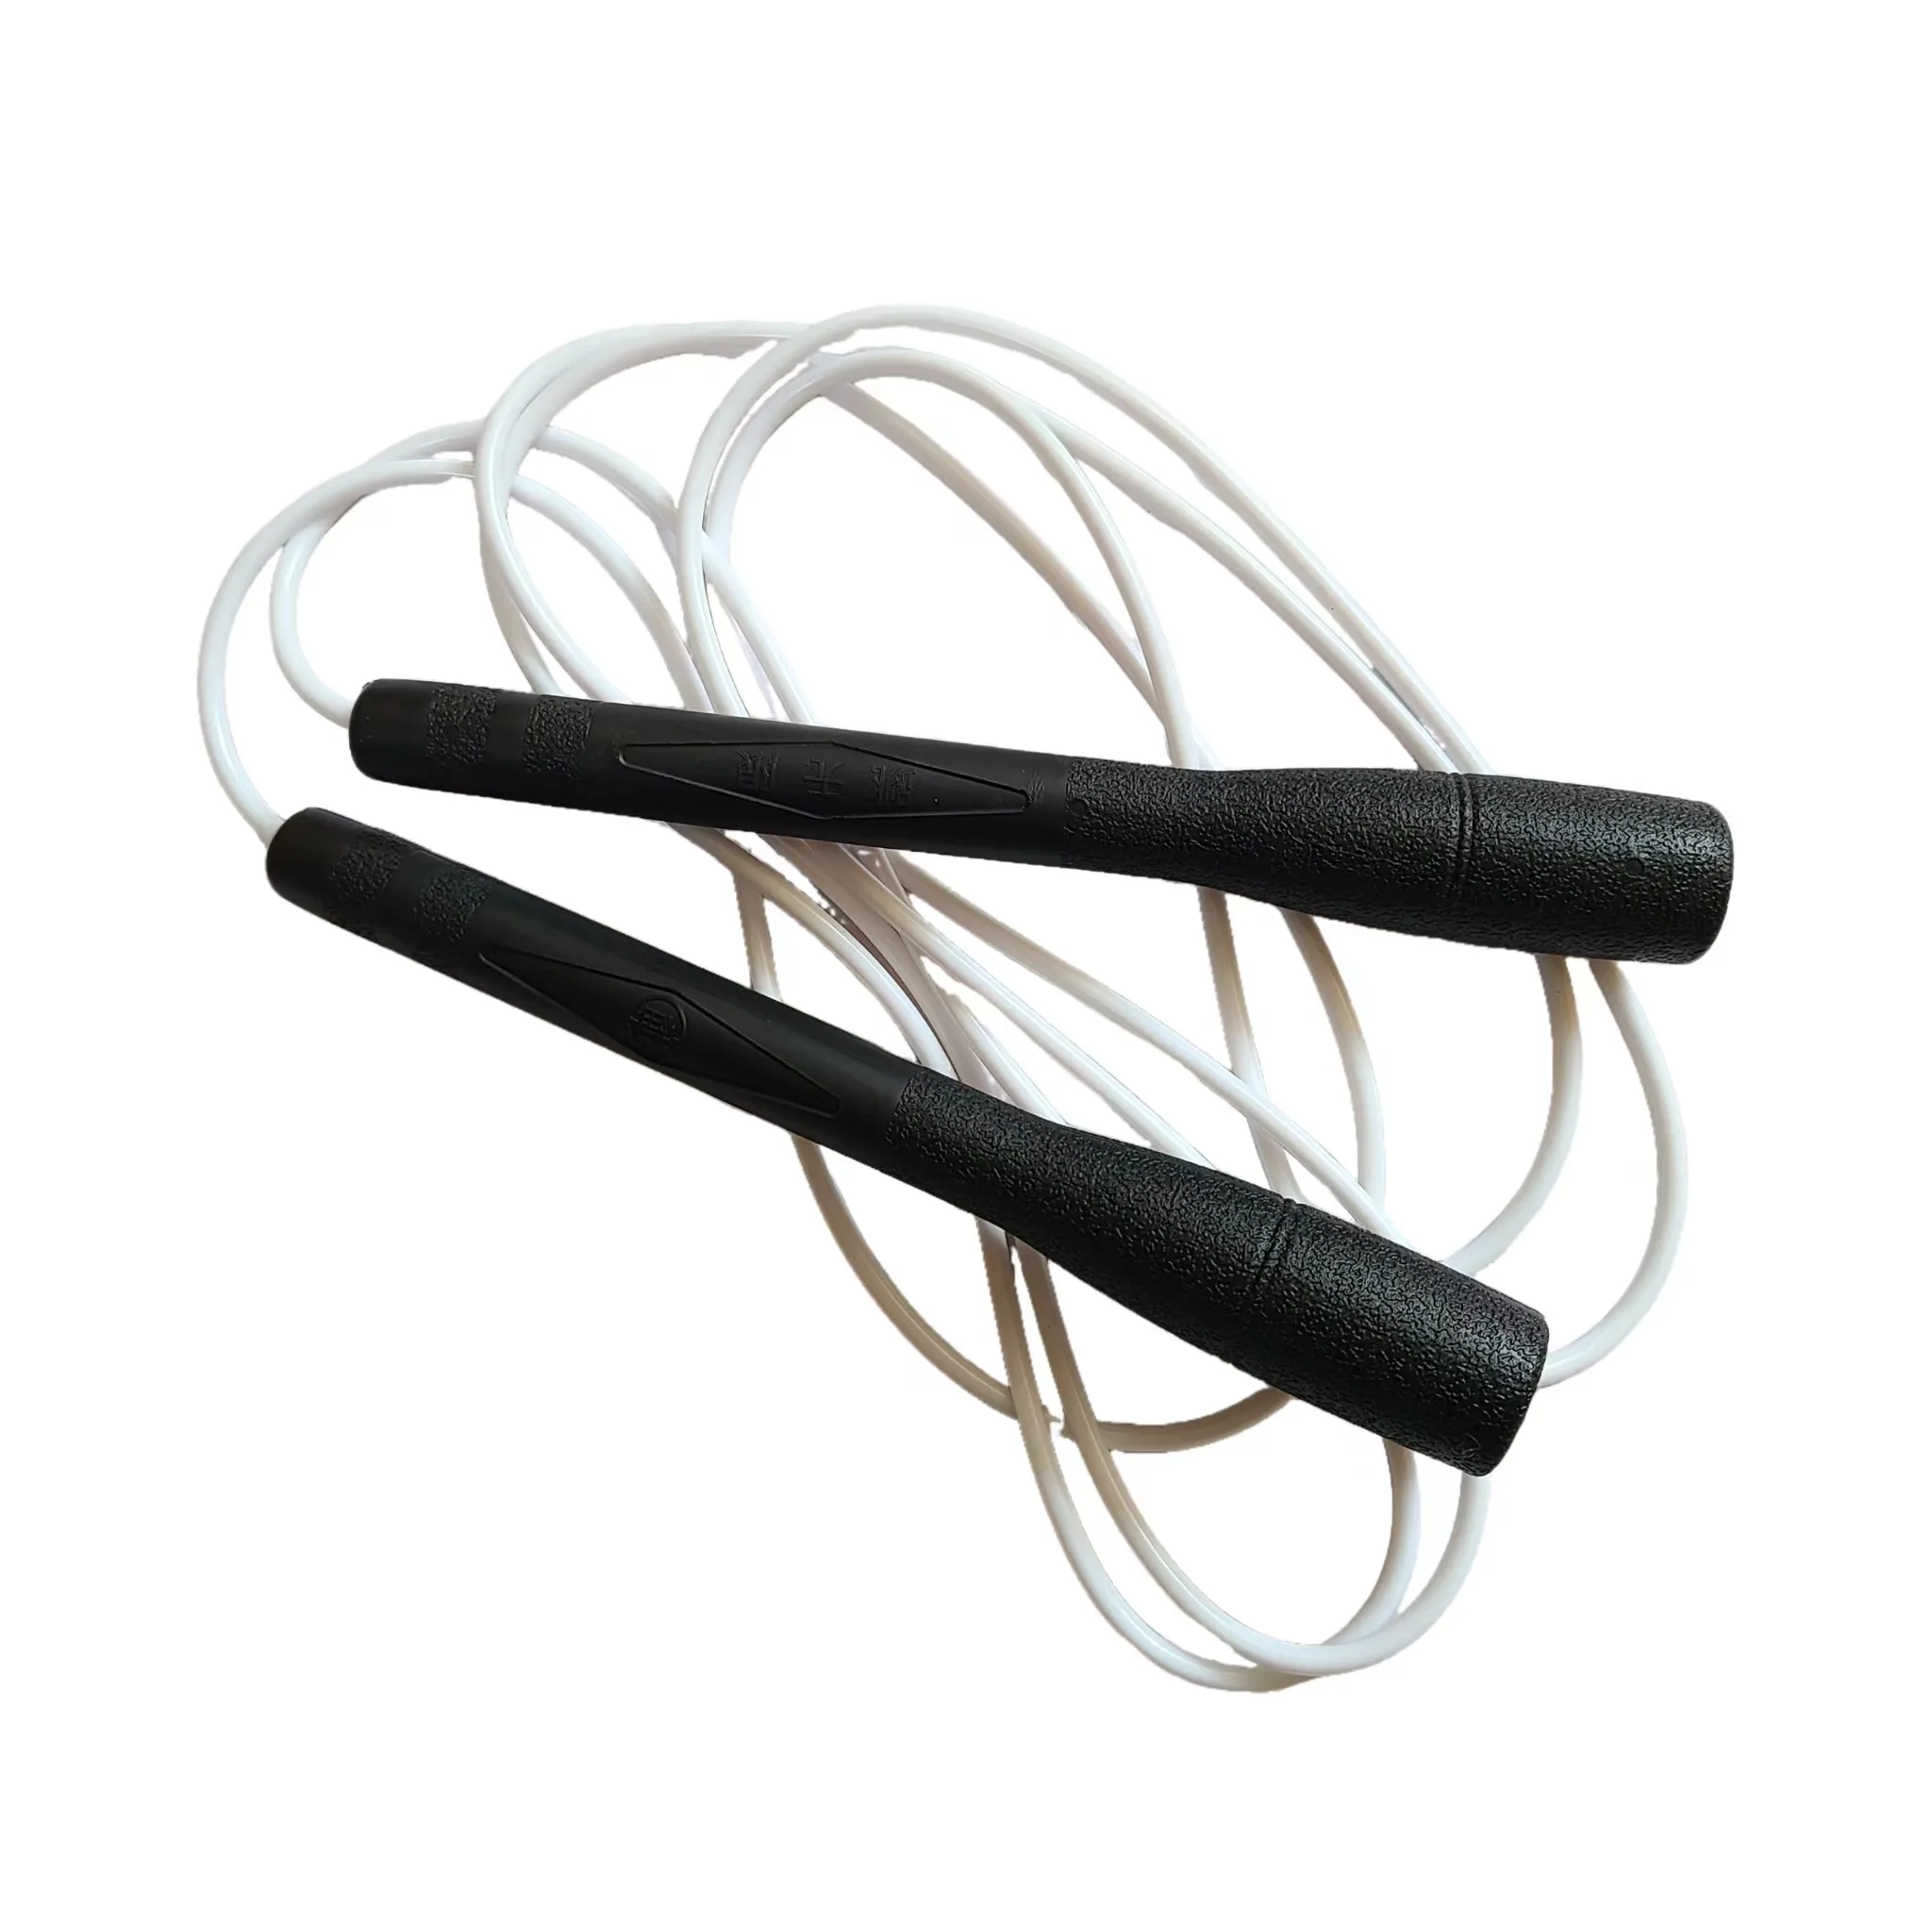 Tali Skipping pintar tanpa kabel, tali lompat Digital nirkabel untuk kebugaran elektronik dengan aplikasi gratis Game